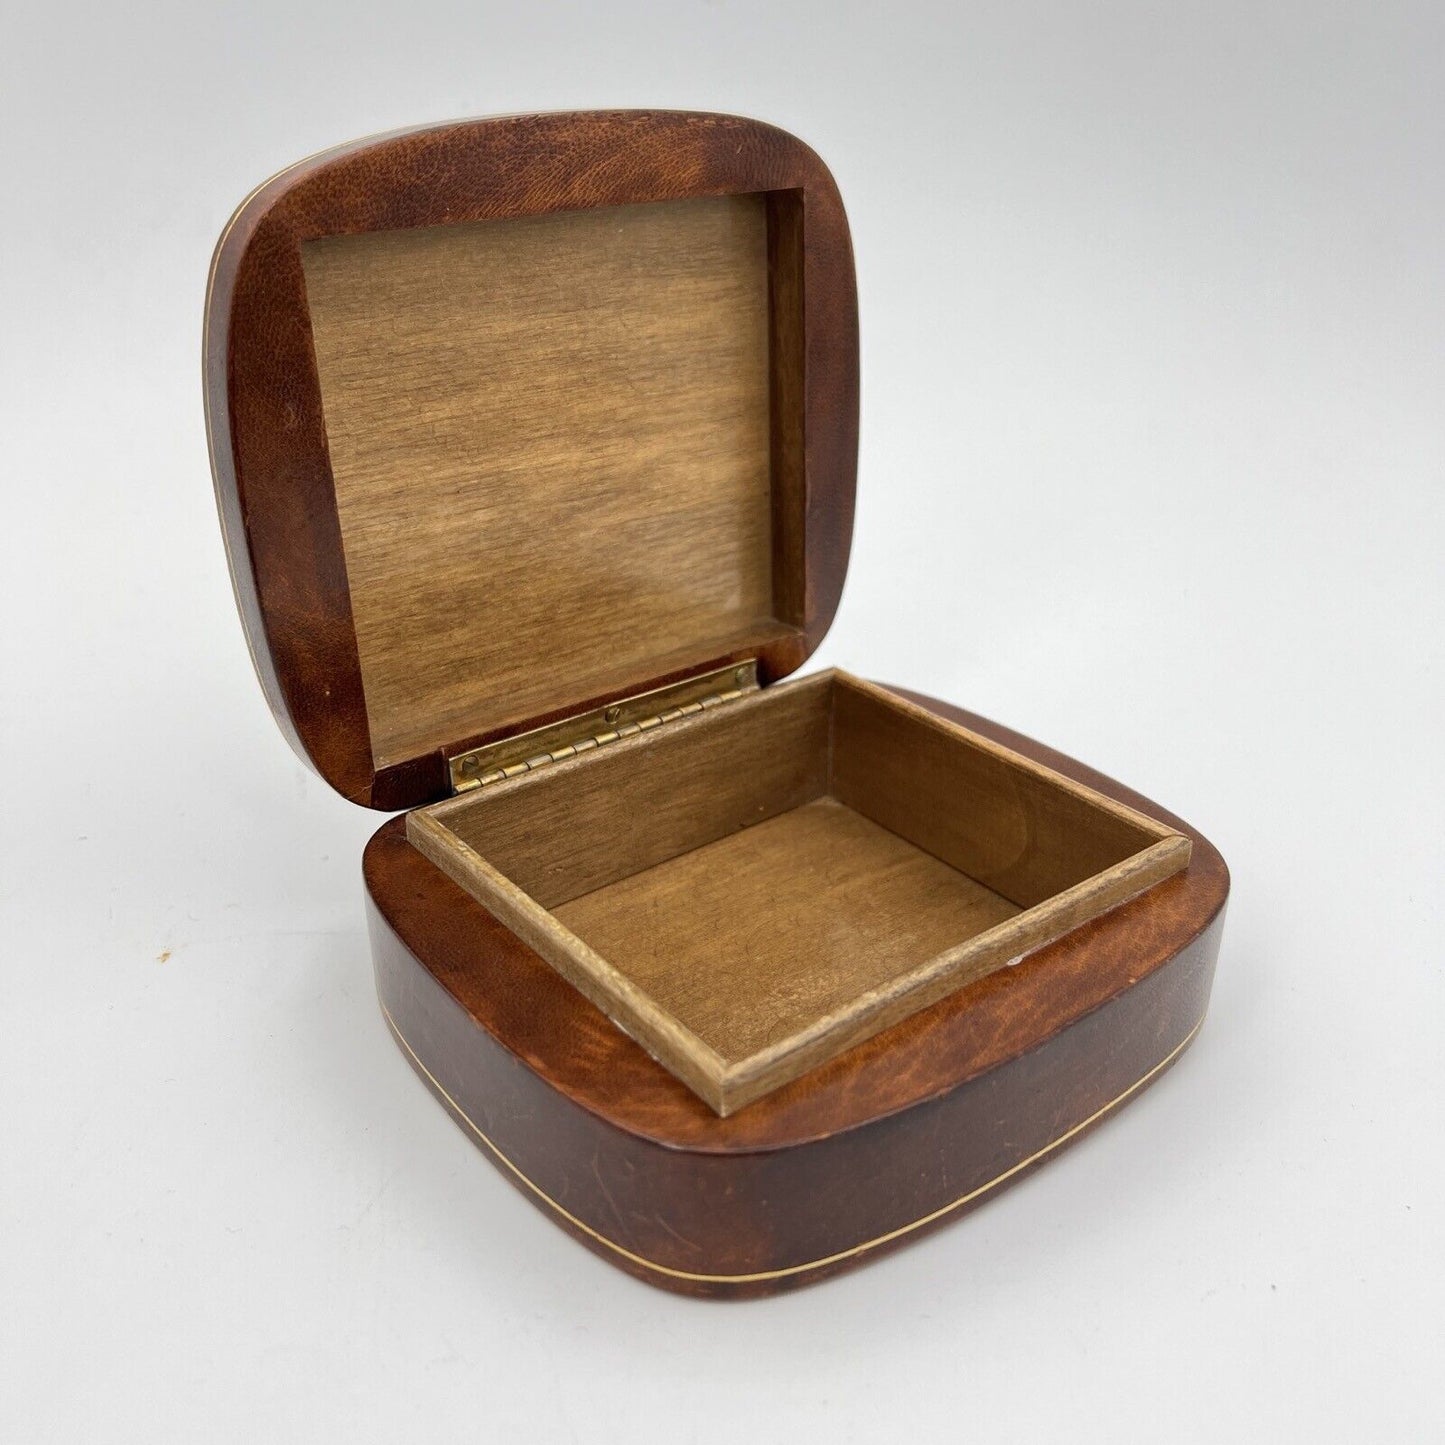 Scatola antica in pelle marrone da scrivania custodia scatolina porta oggetti